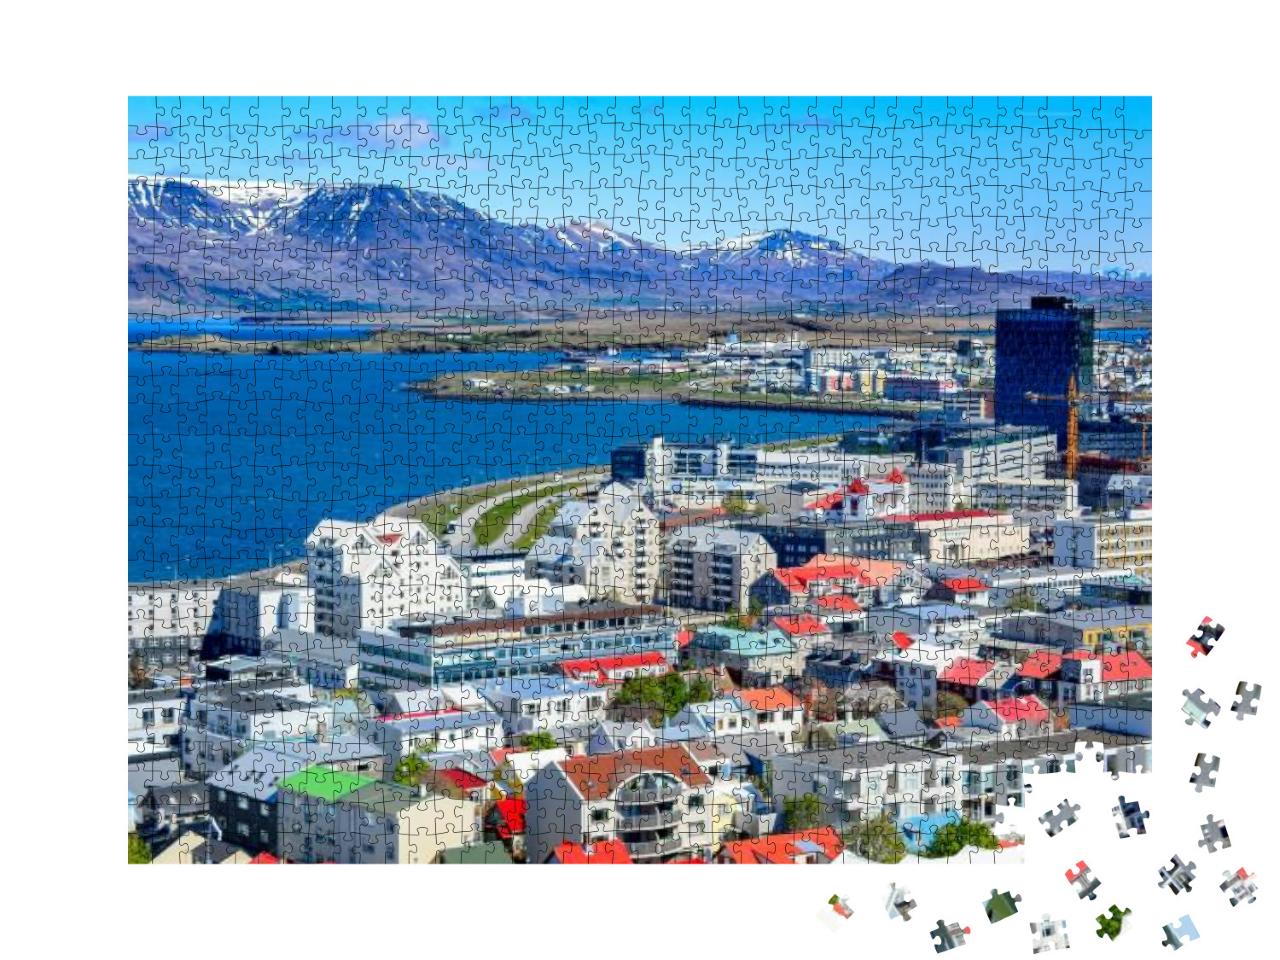 Puzzle 1000 Teile „Reykjavik, die Hauptstadt von Island, mit Blick auf den Hafen und den Berg Esja“